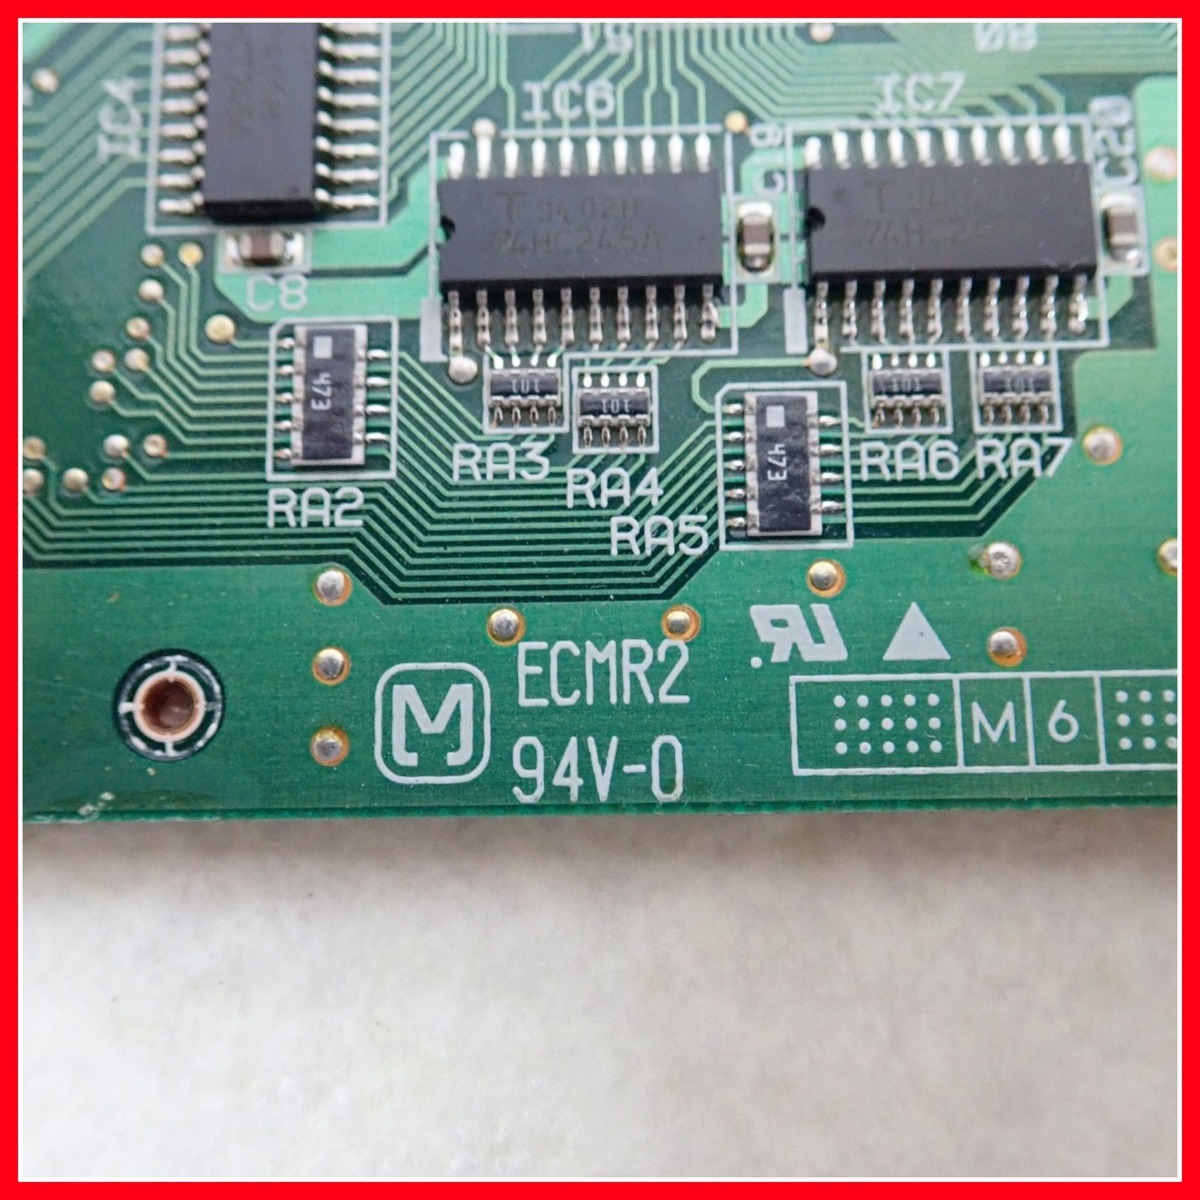 ◇Roland PC-98 Cバスボード ECMR2 94V-0 MIDI レトロPCパーツ ローランド ジャンク【10_画像5